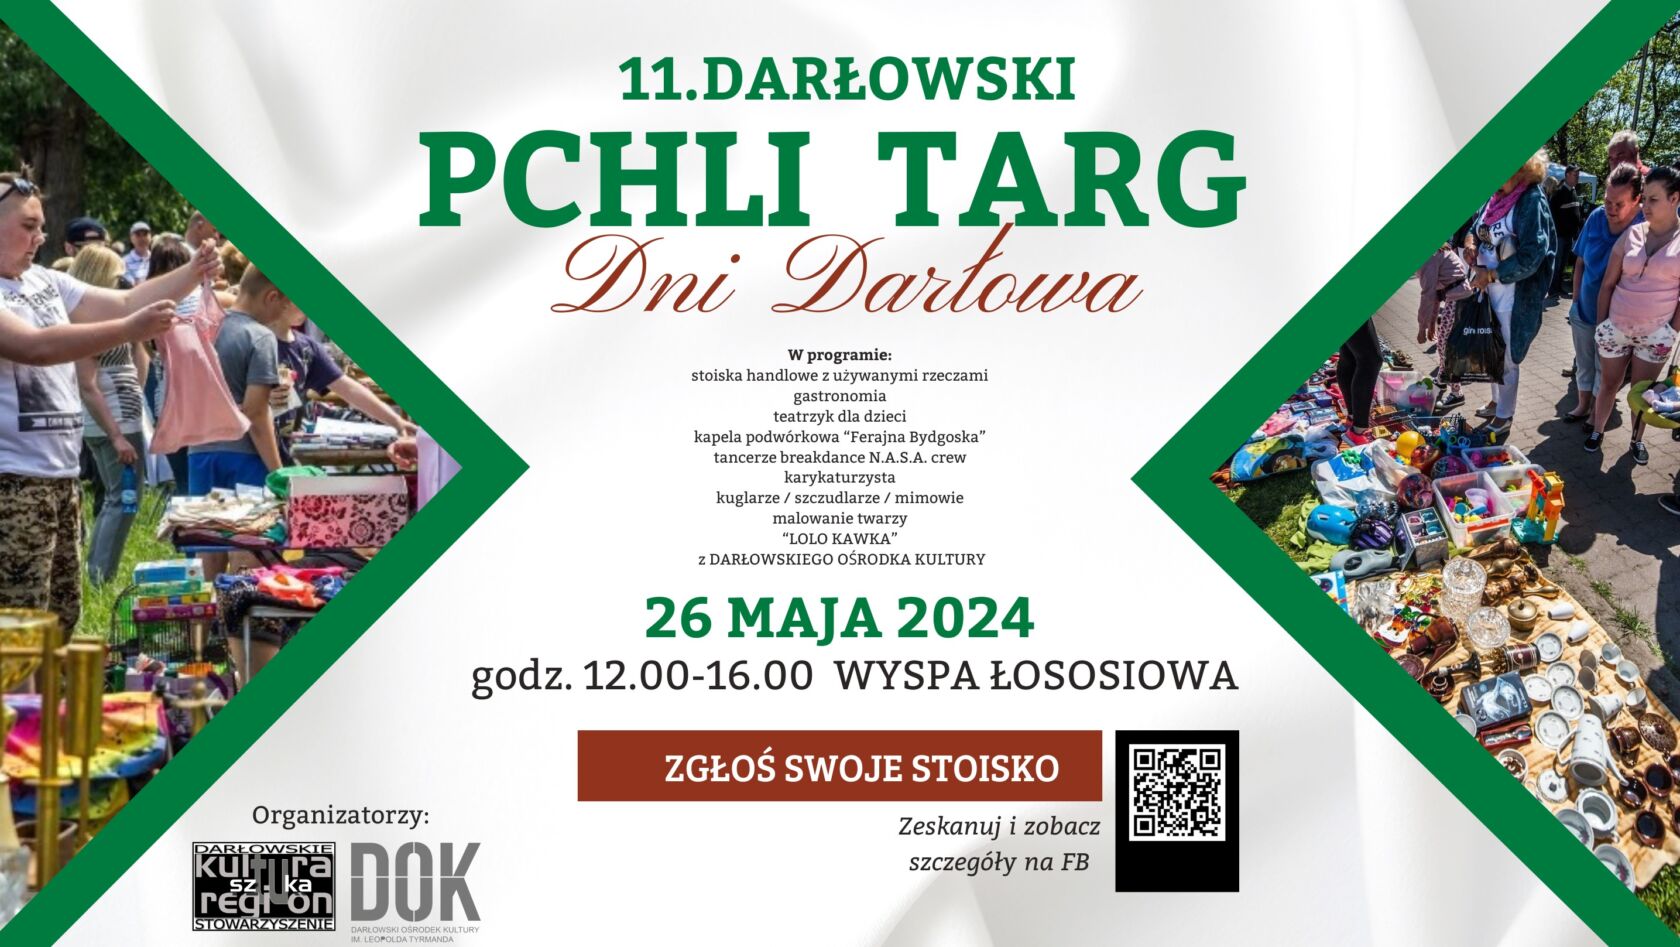 11. Darłowski Pchli Targ